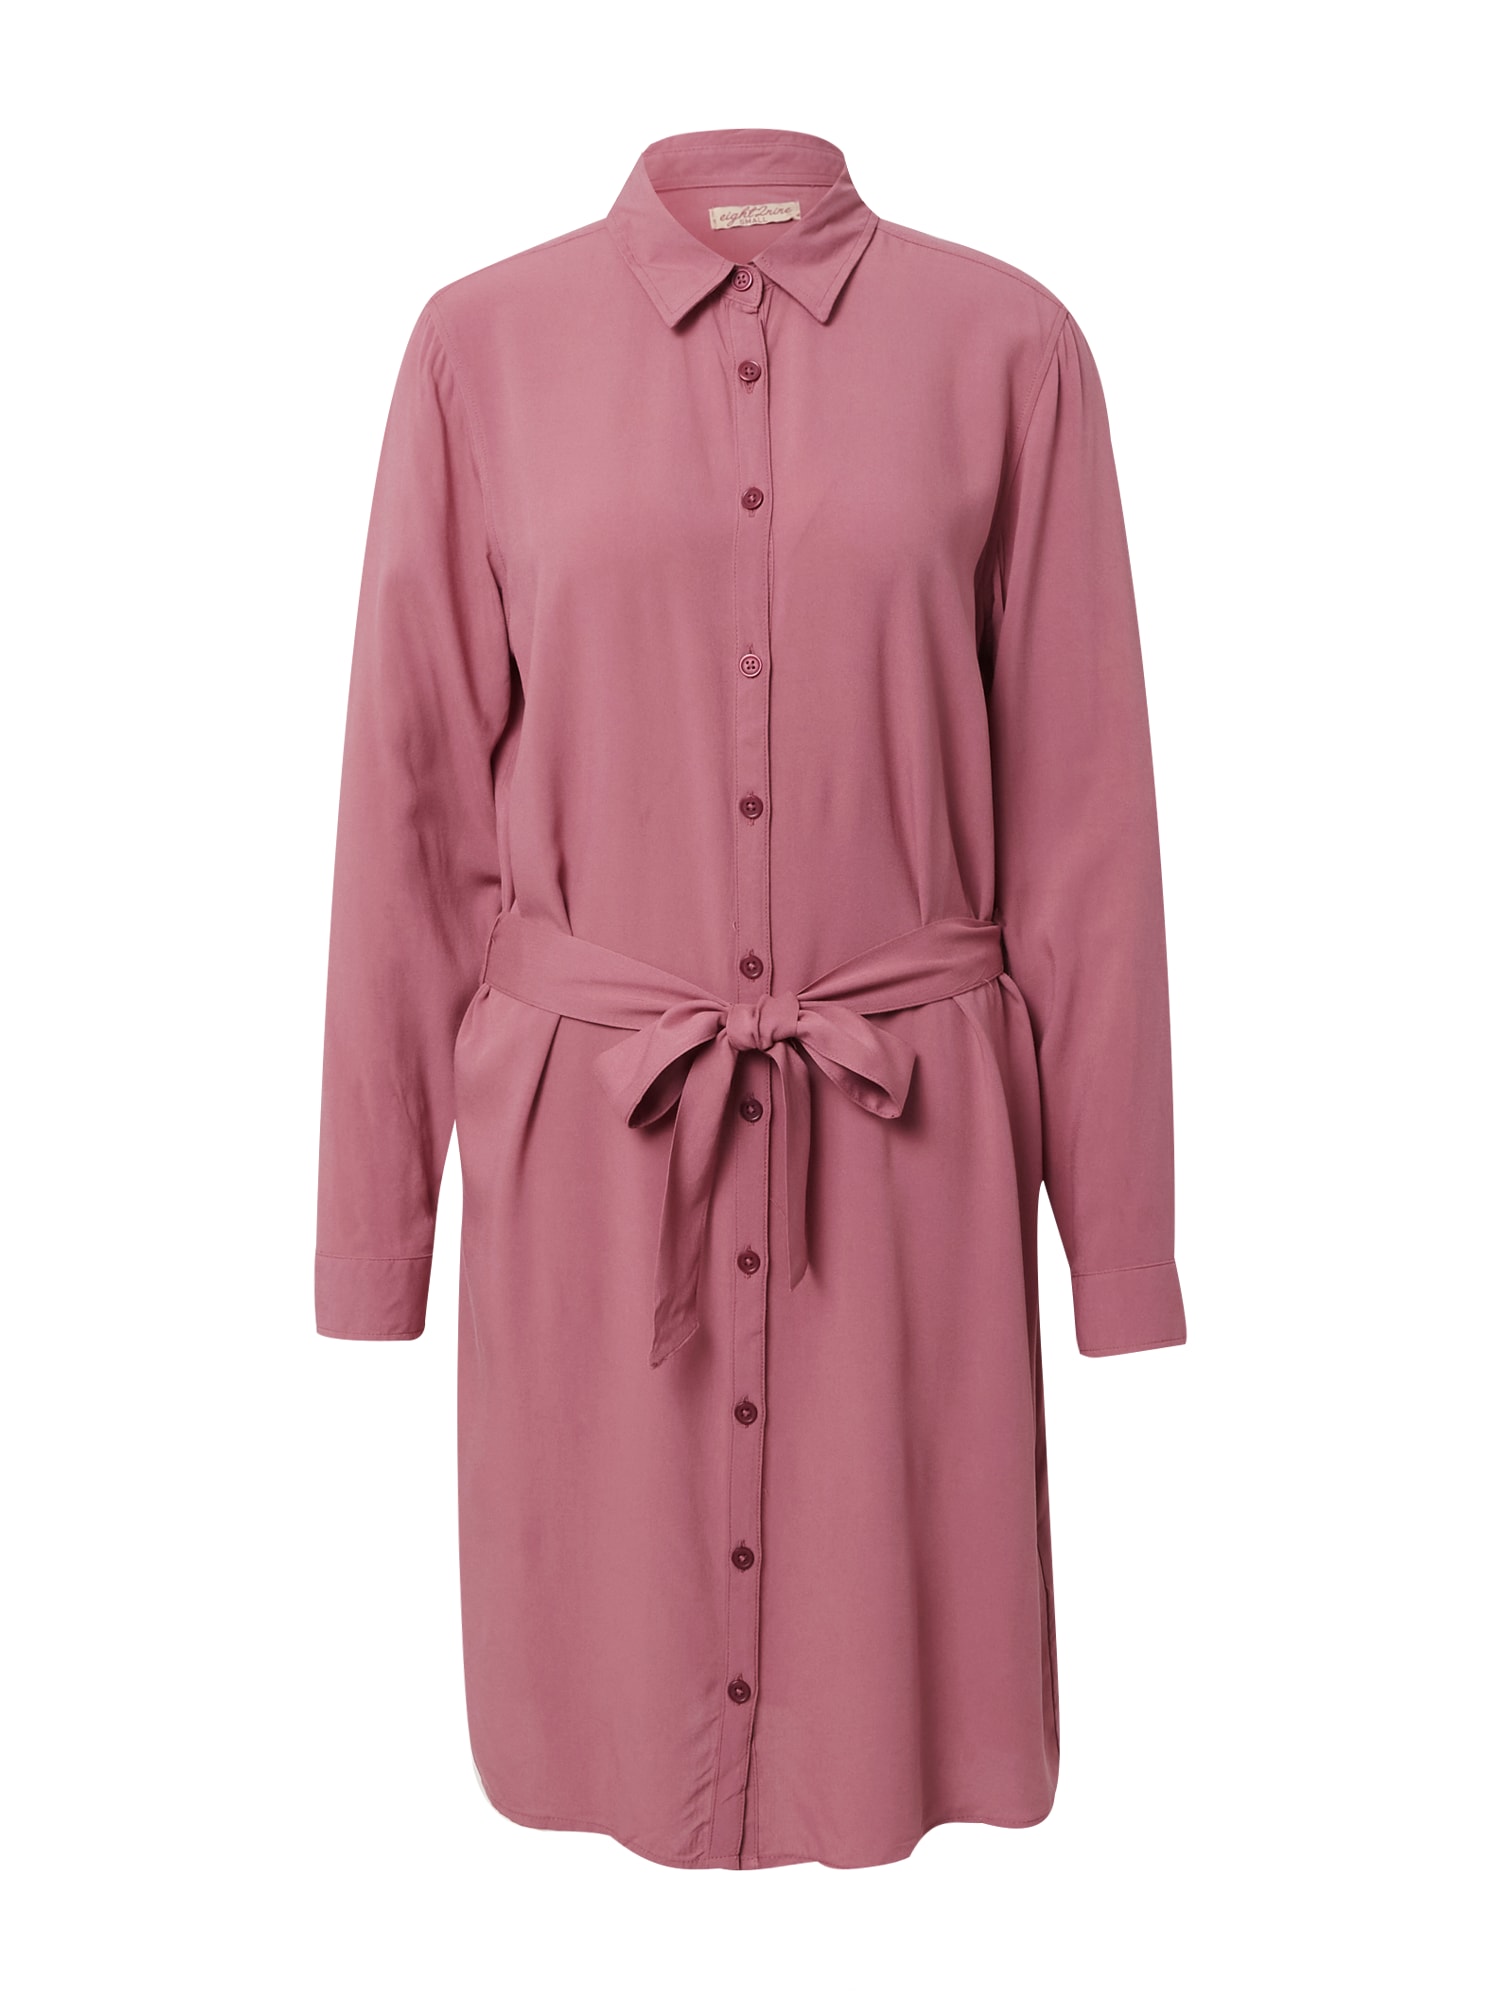 Eight2Nine Palaidinės tipo suknelė ryškiai rožinė spalva